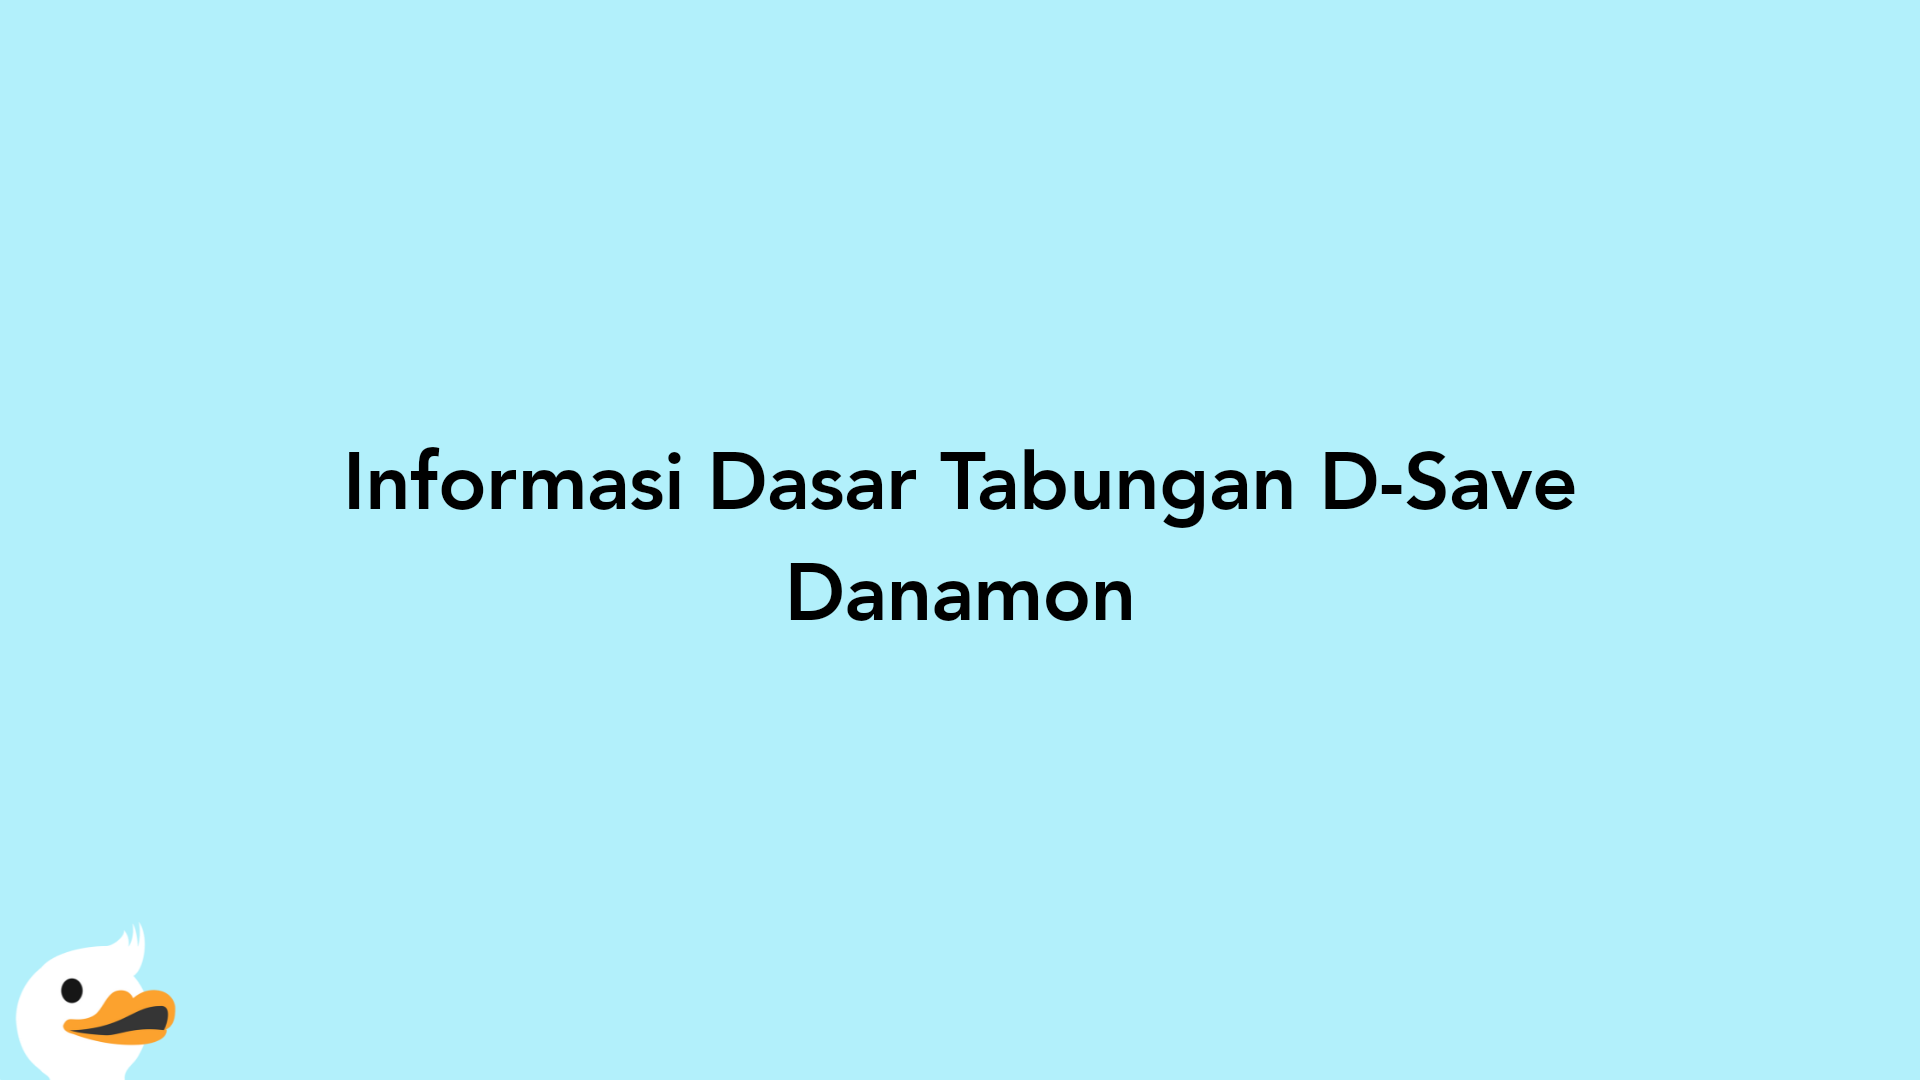 Informasi Dasar Tabungan D-Save Danamon